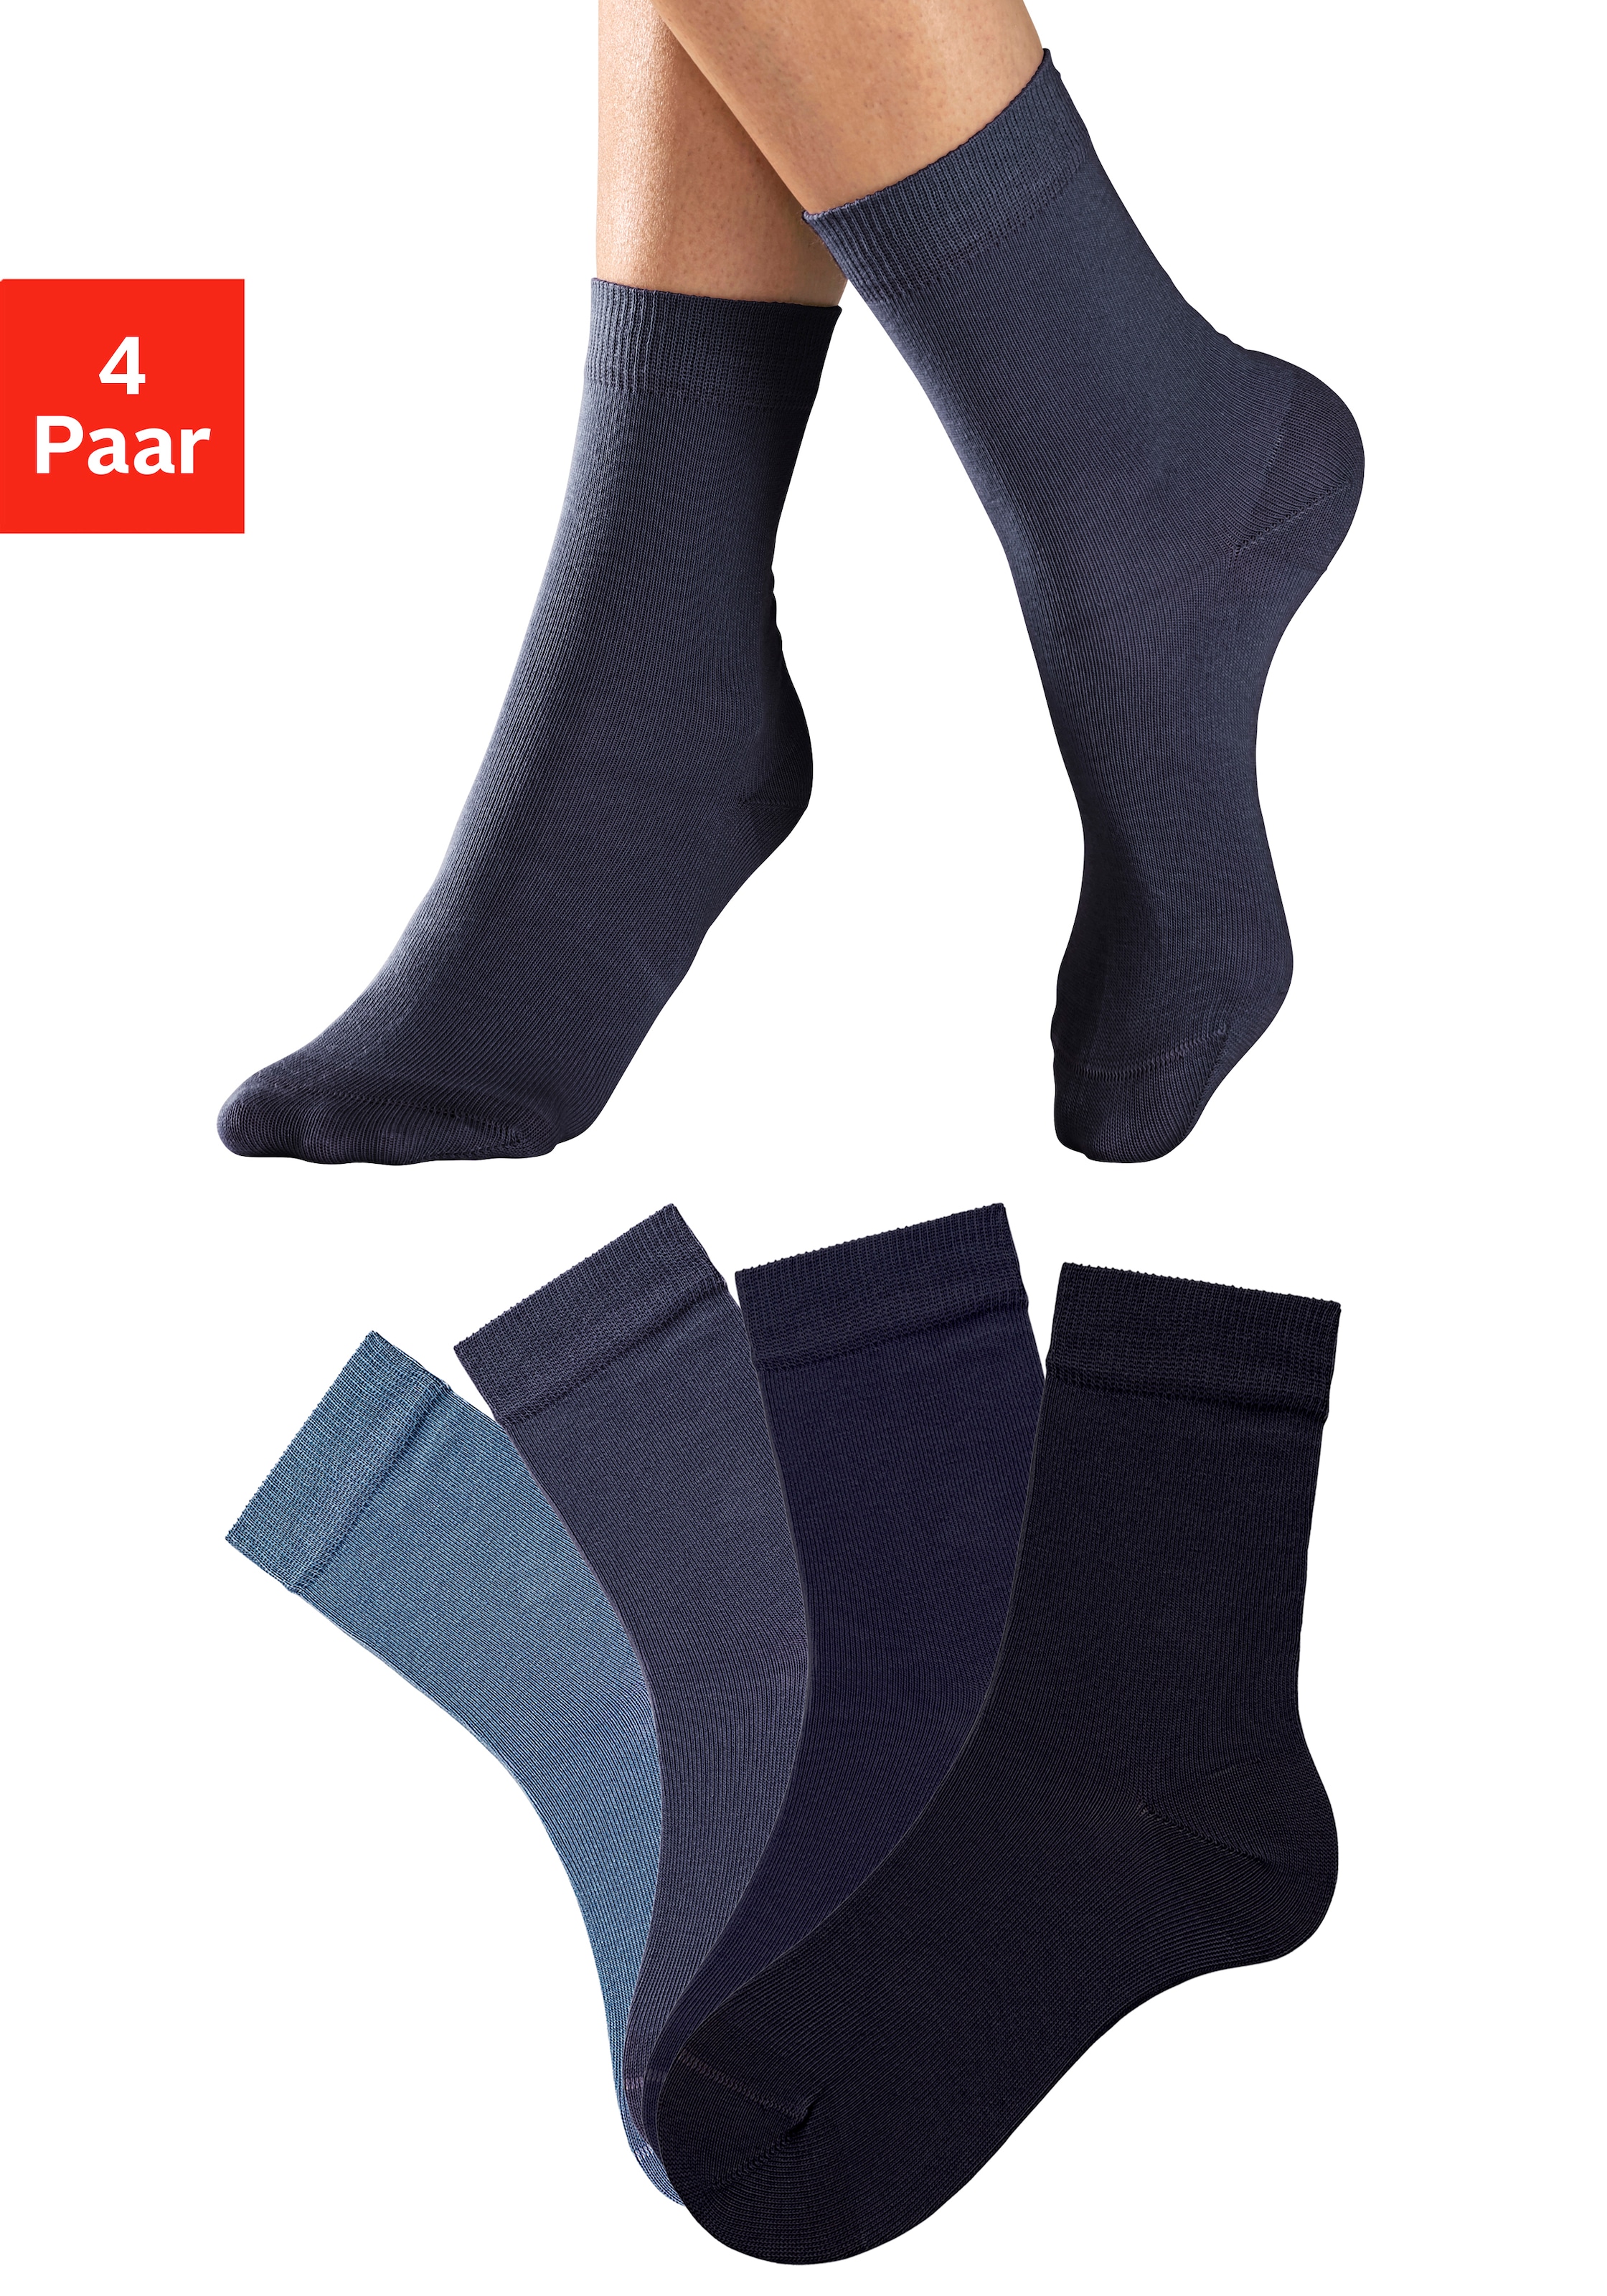 Image of Lavana Socken, (4 Paar), in unterschiedlichen Farbzusammenstellungen